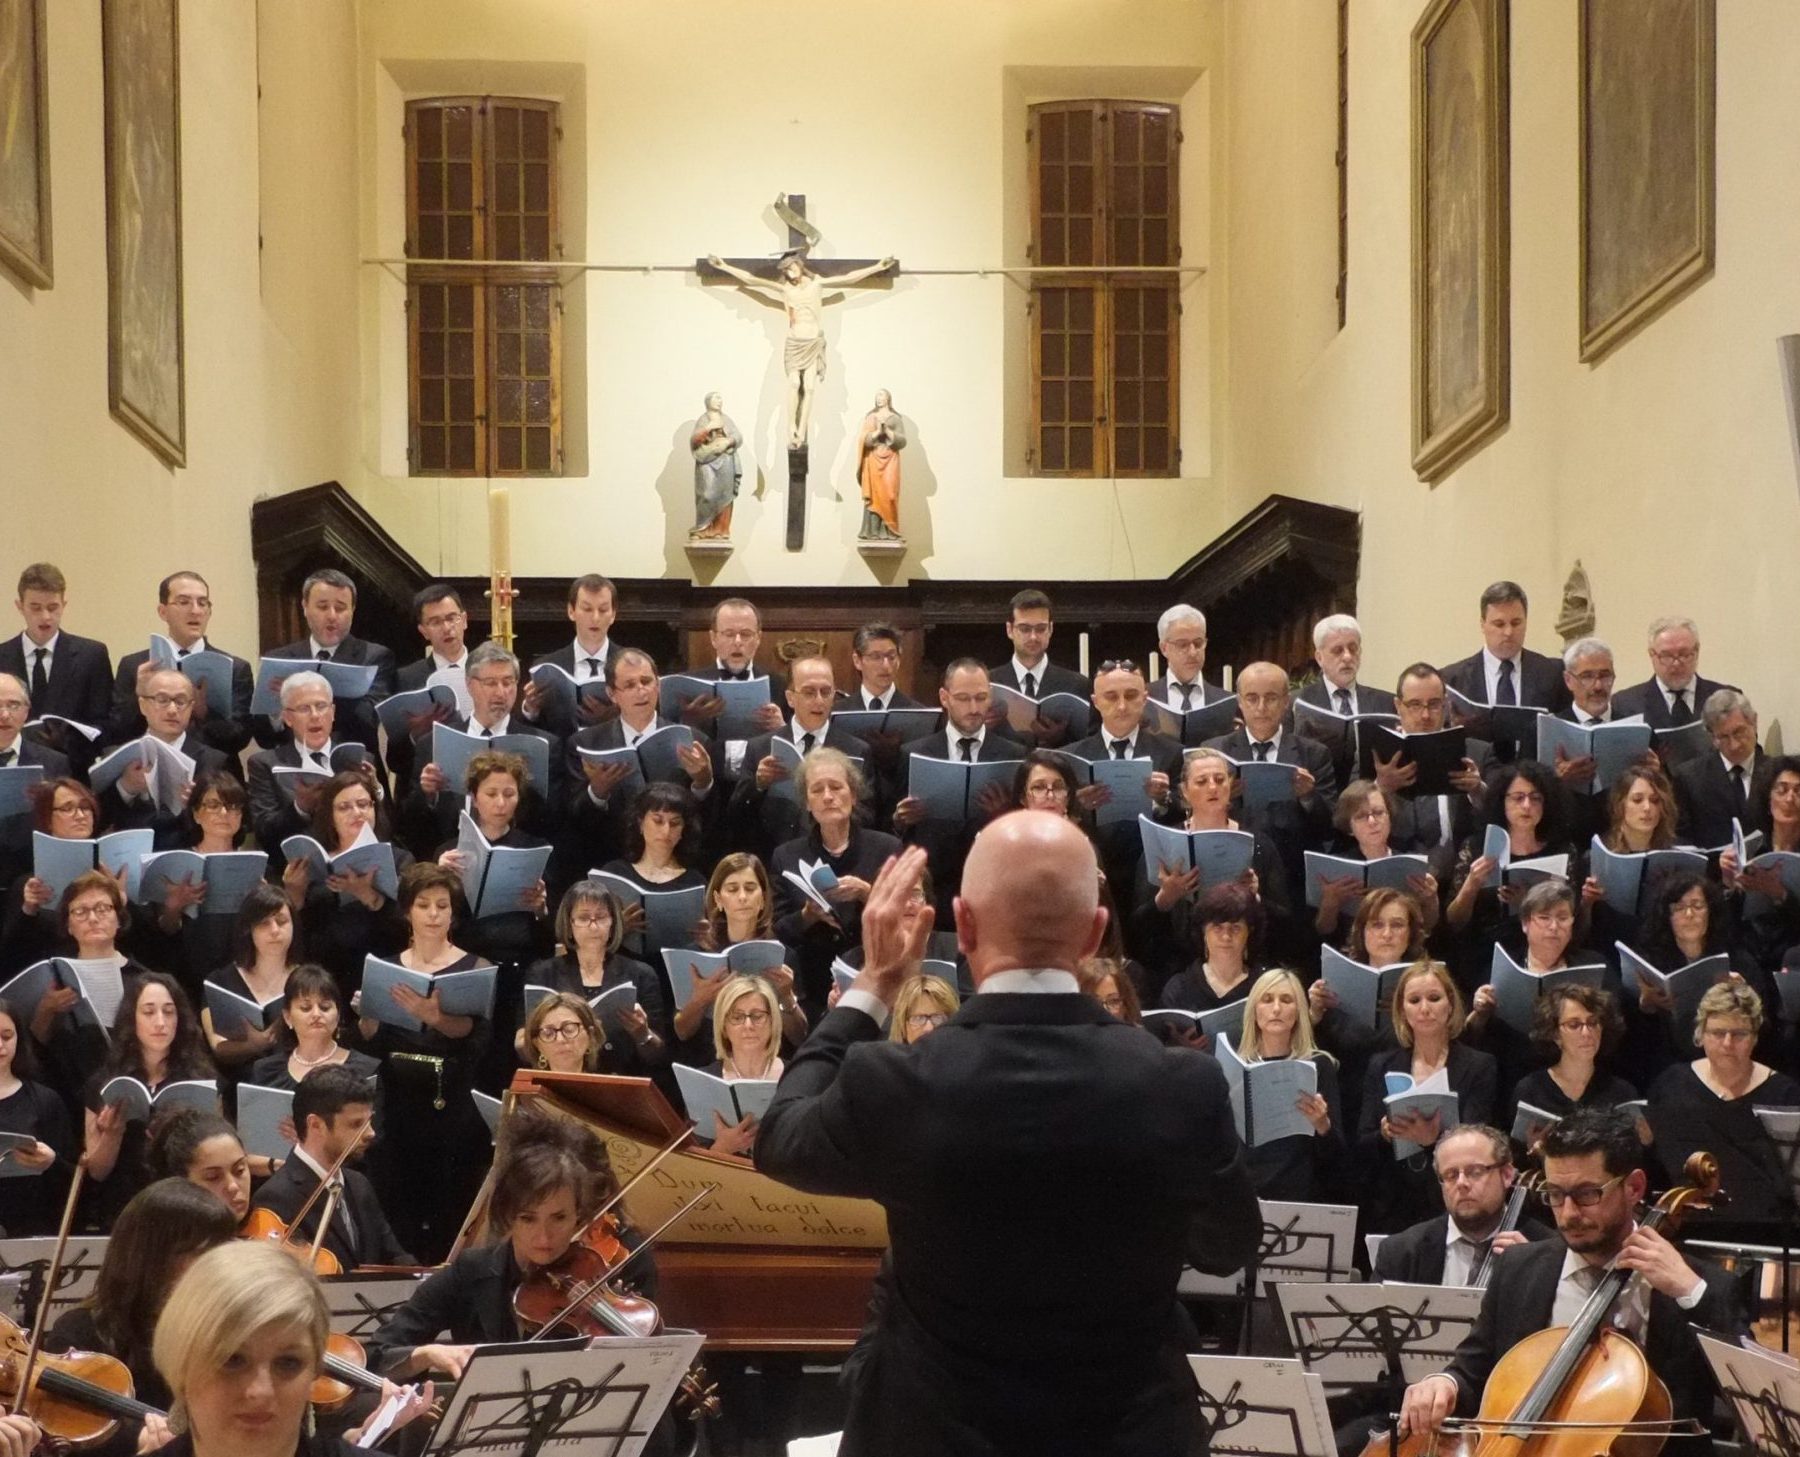 CONCERTO MESSIAH DI HENDEL cori Cappuccinini e San Paolo con l'Orchestra Maderna